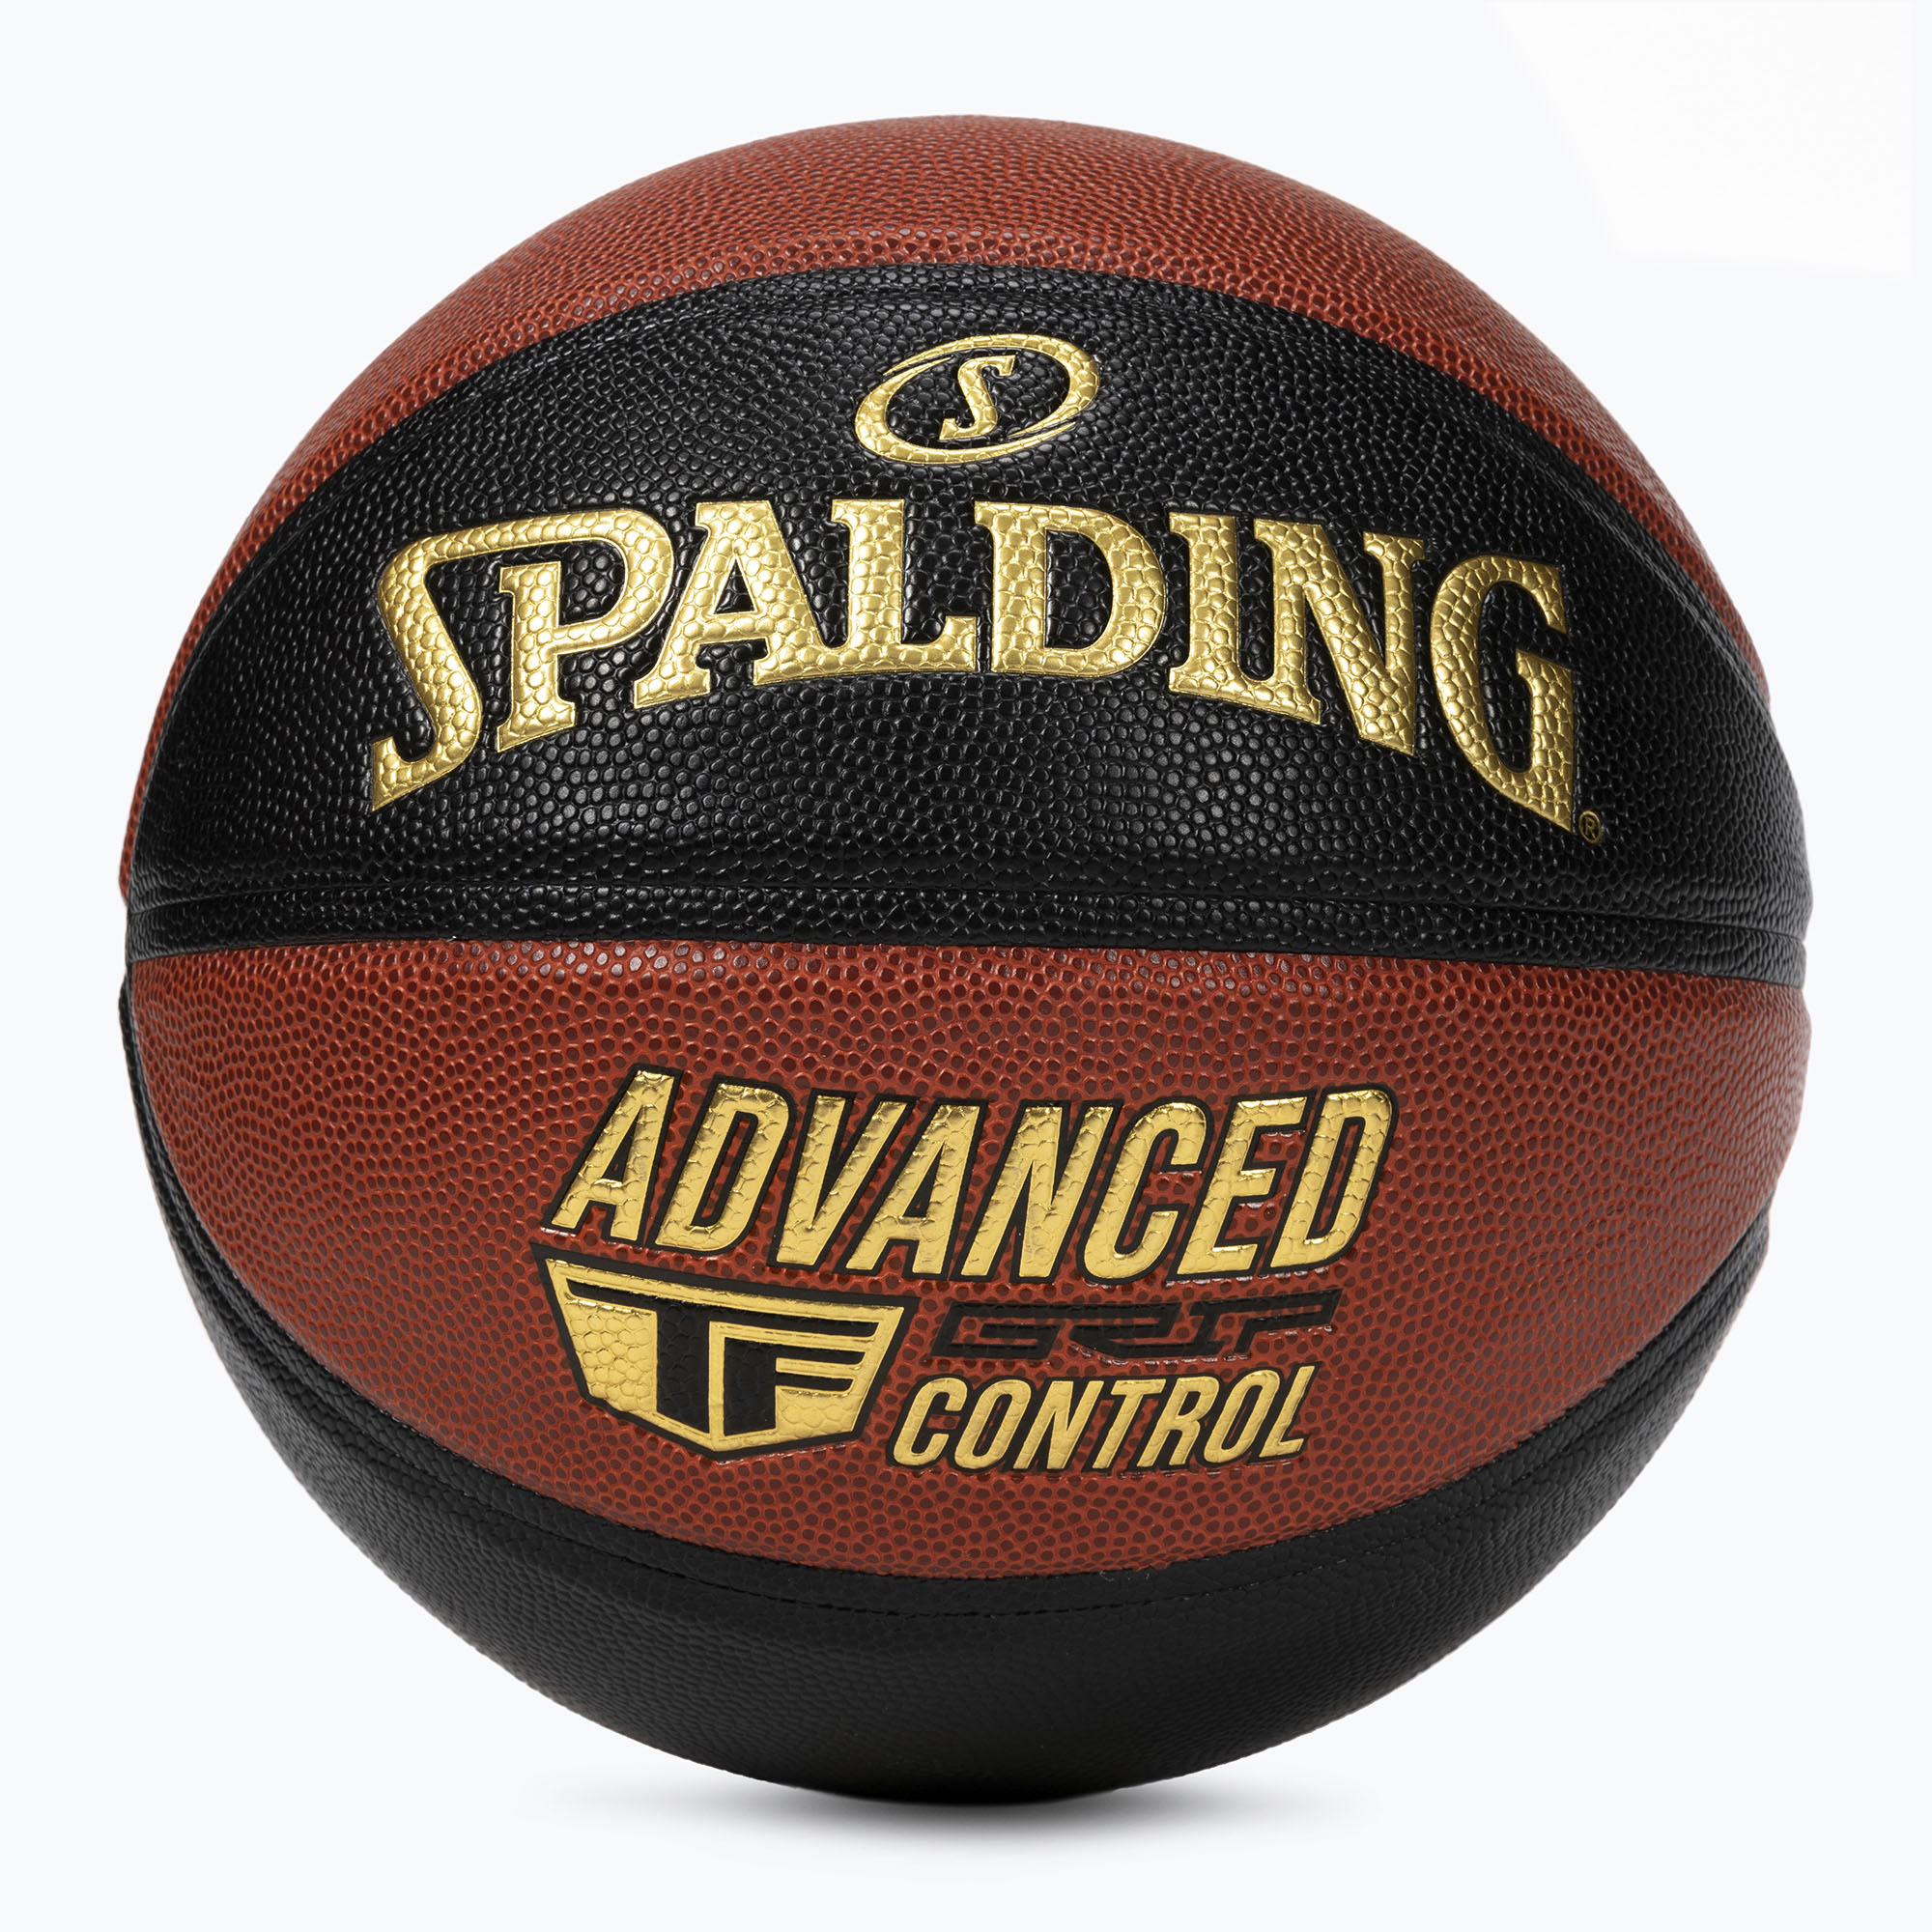 Spalding Advanced Grip Control basketbal oranžová a čierna 76872Z veľkosť 7